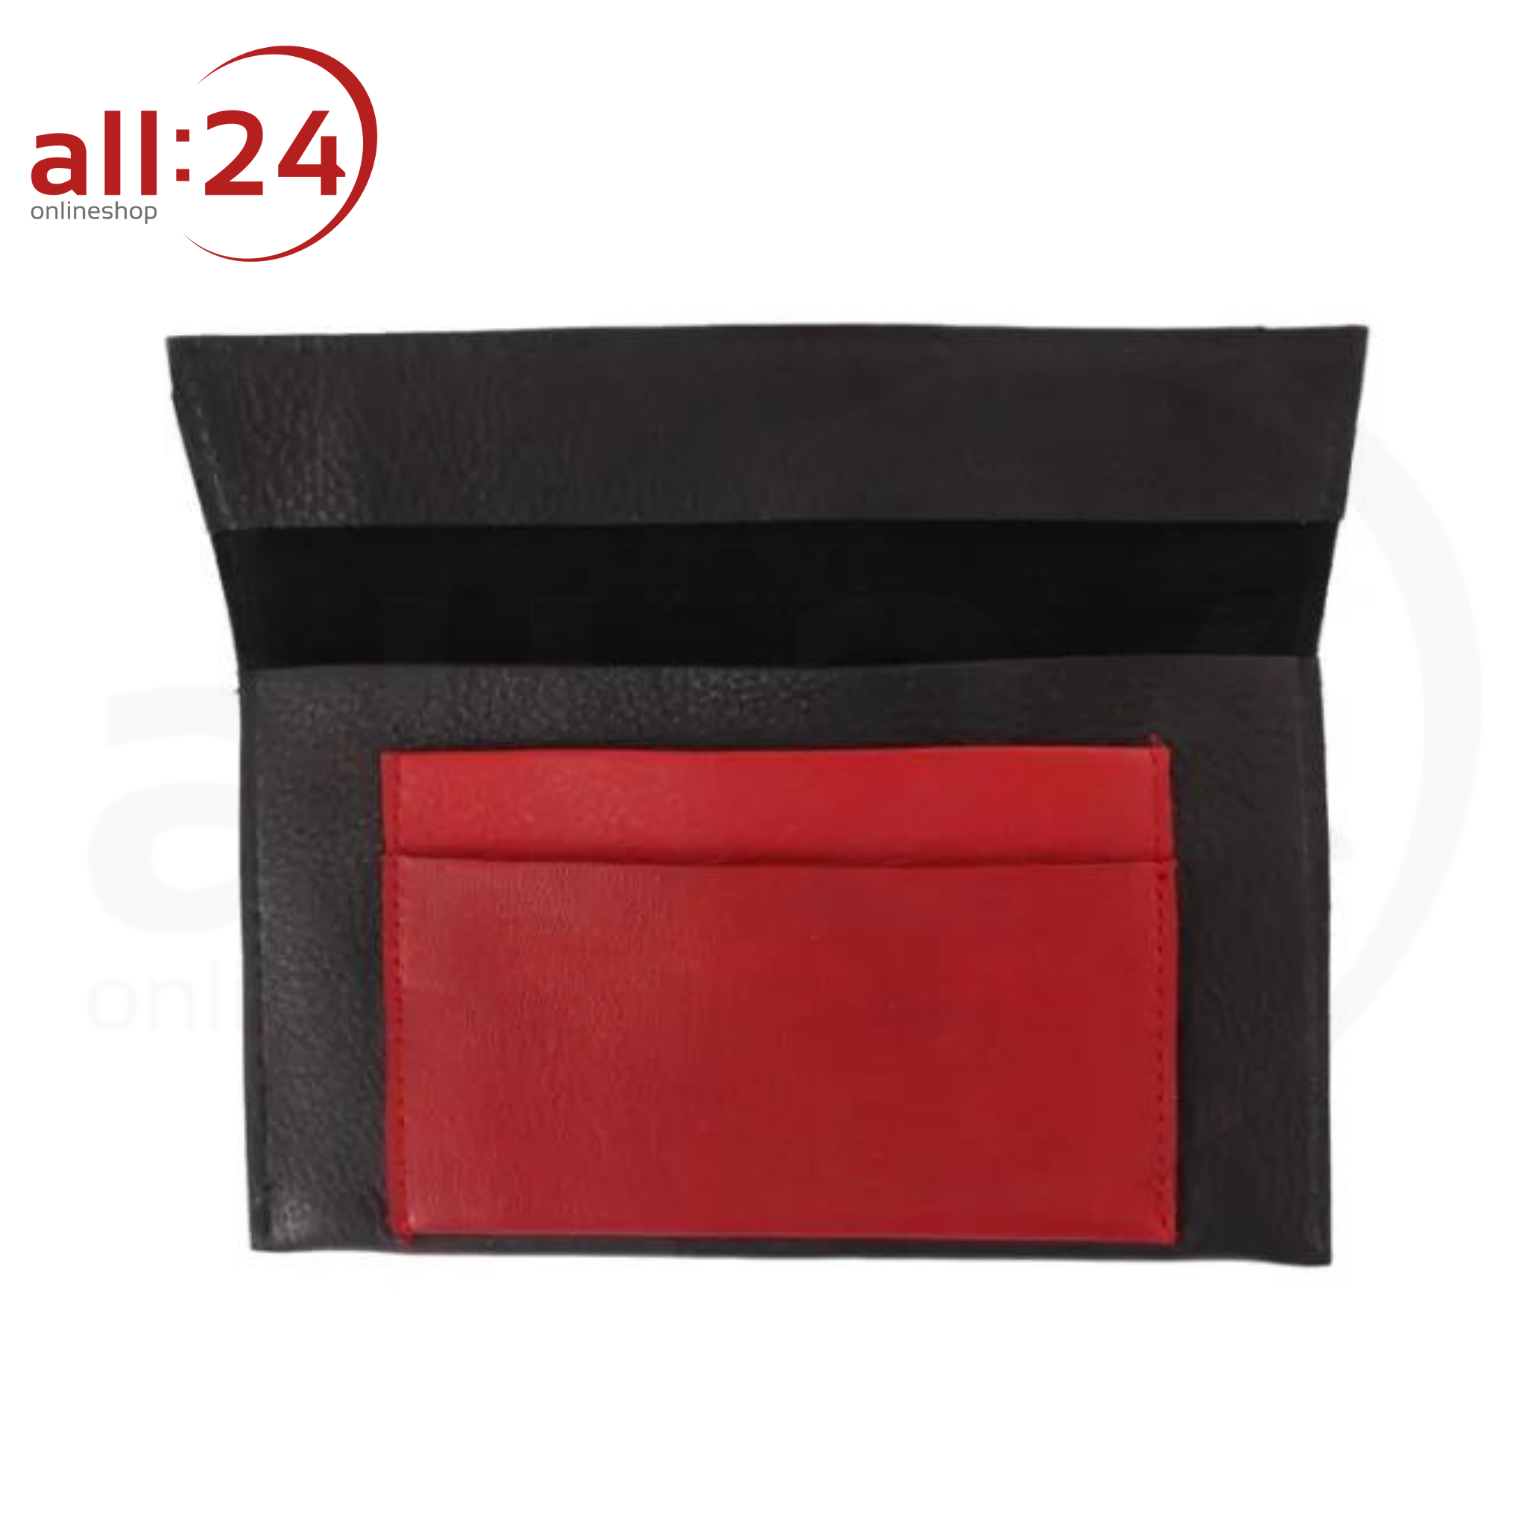 Tabaktasche Leder rot/schwarz mit Druckverschluss 